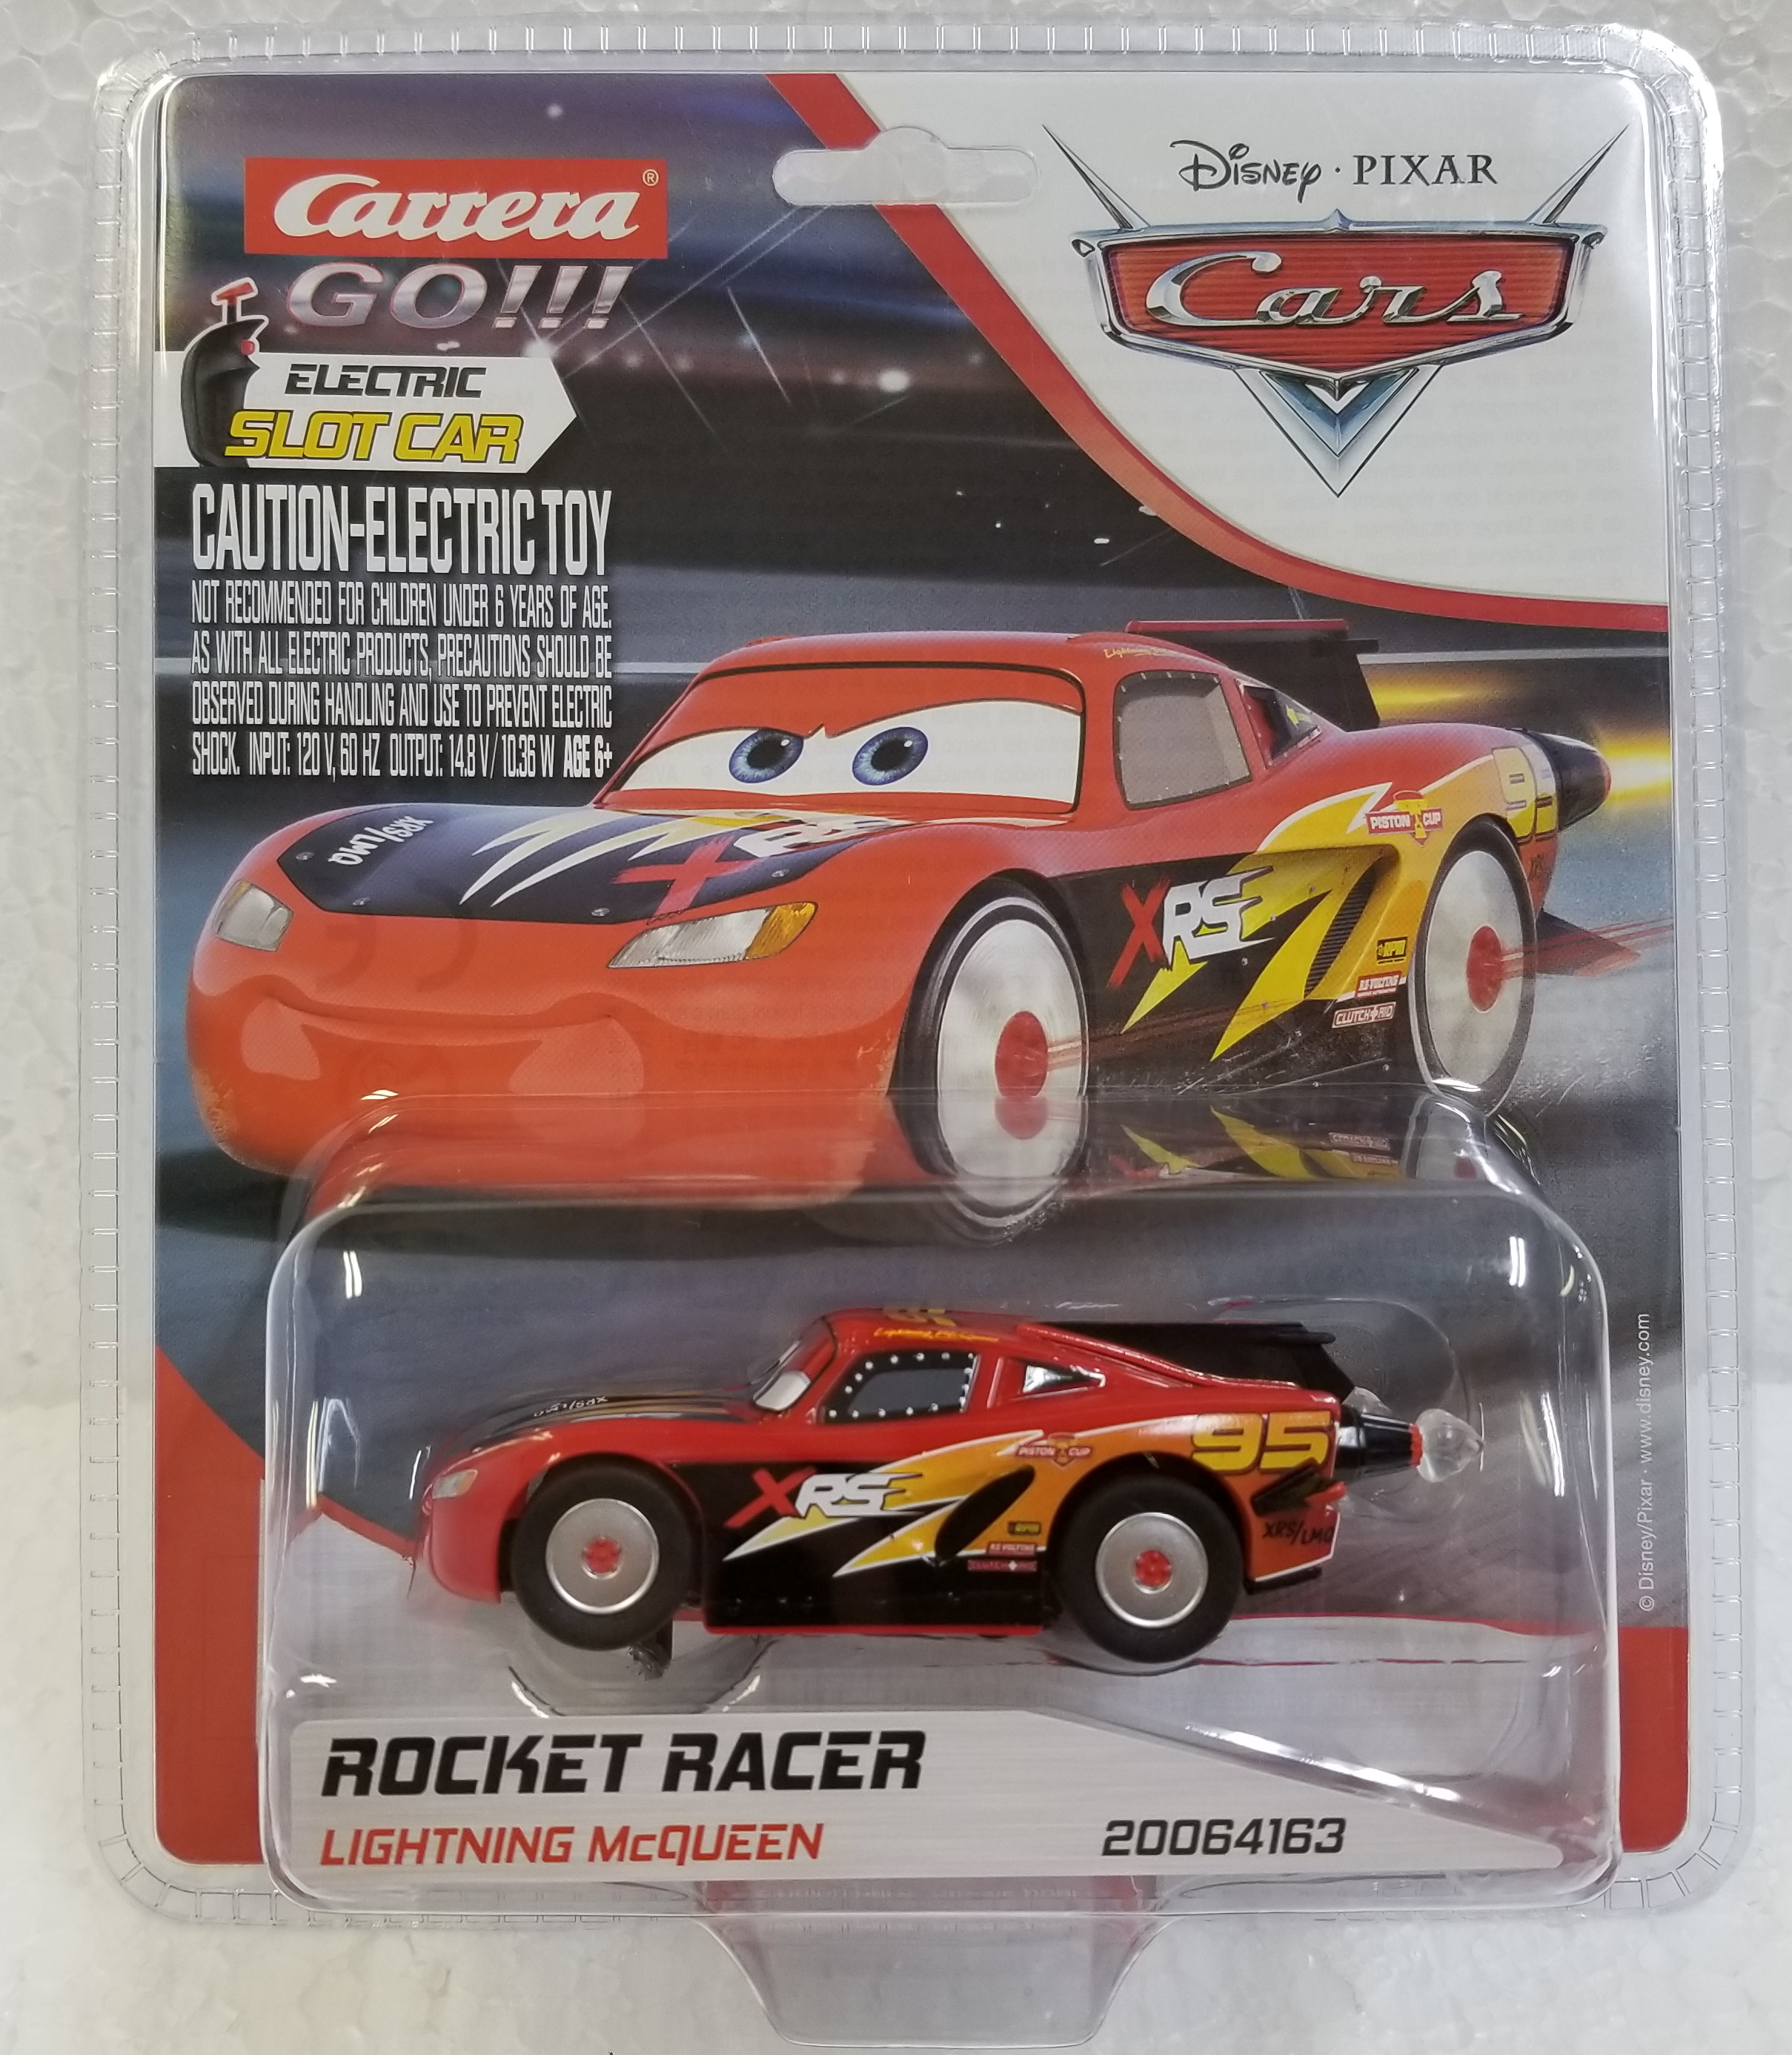 64163 Carrera GO!!! Disney Cars Lightning McQueen Rocket Racer, #95 143  Slot Car - Great Traditions